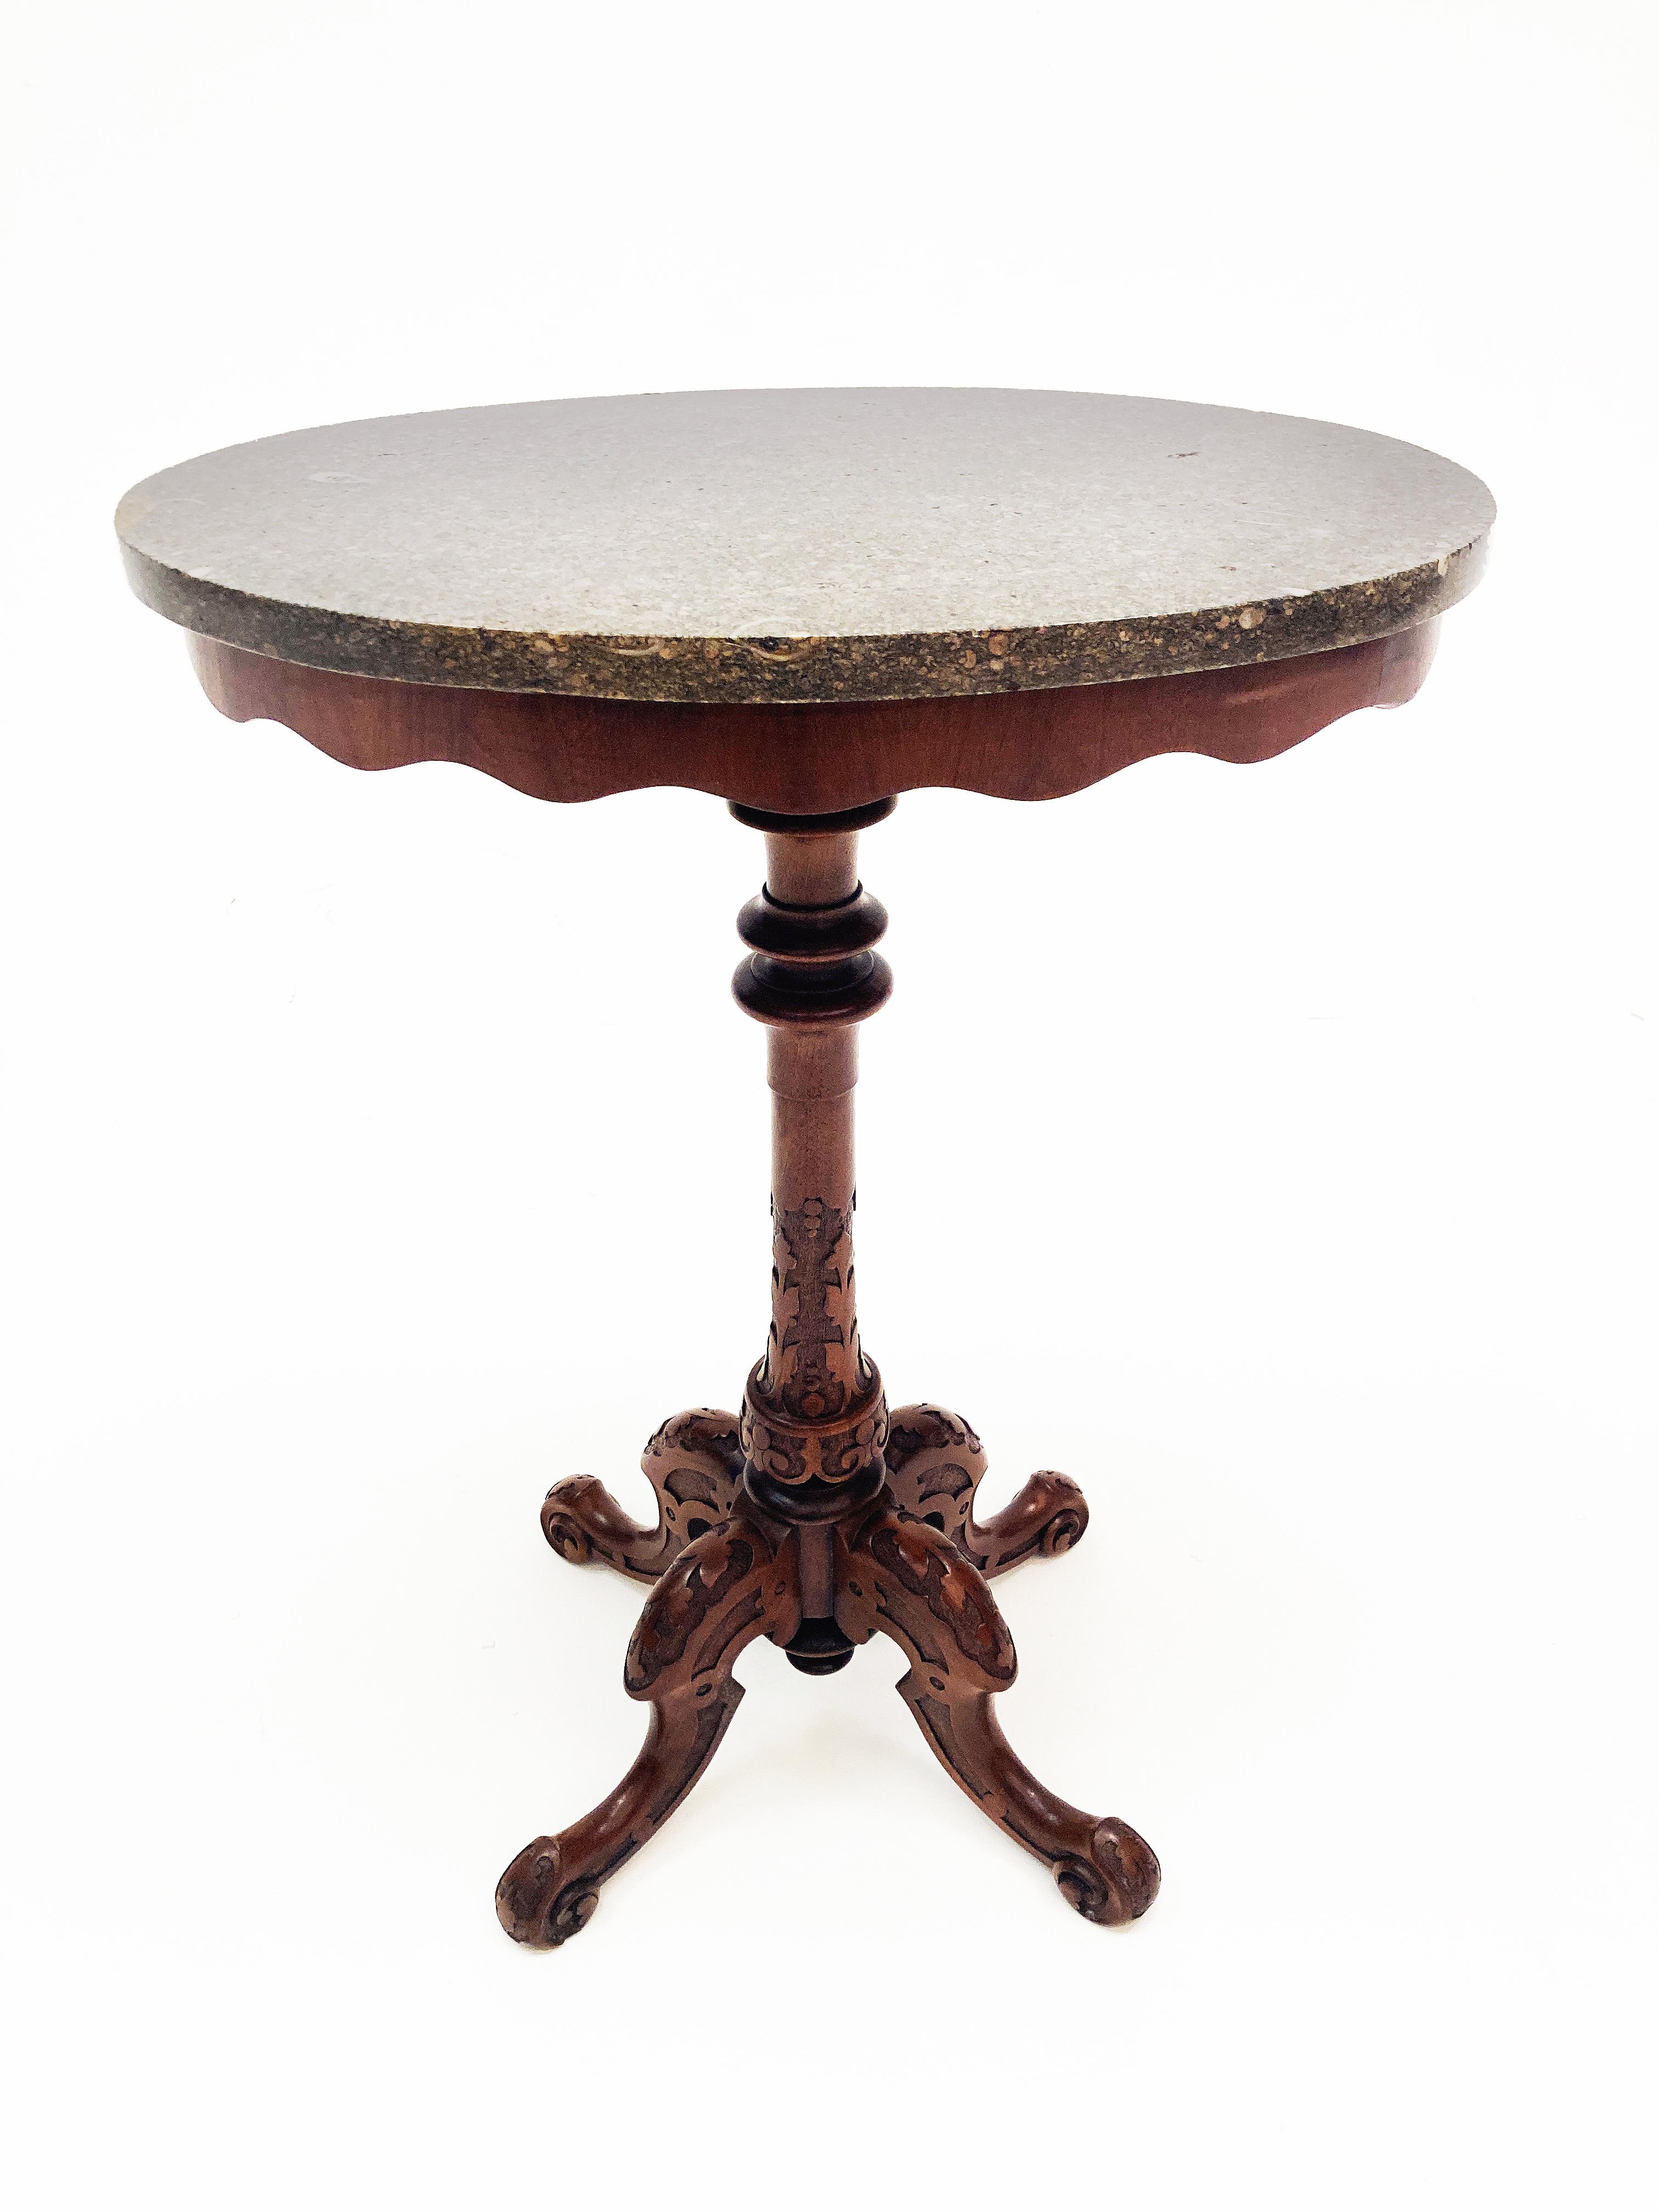 Cette étonnante petite table est un must pour ceux qui recherchent une touche d'artisanat ancien unique, avec la bonne dose de bois riche et de marbre fabuleux. Cette pièce exceptionnelle est dotée d'une colonne unique tournée et sculptée qui se